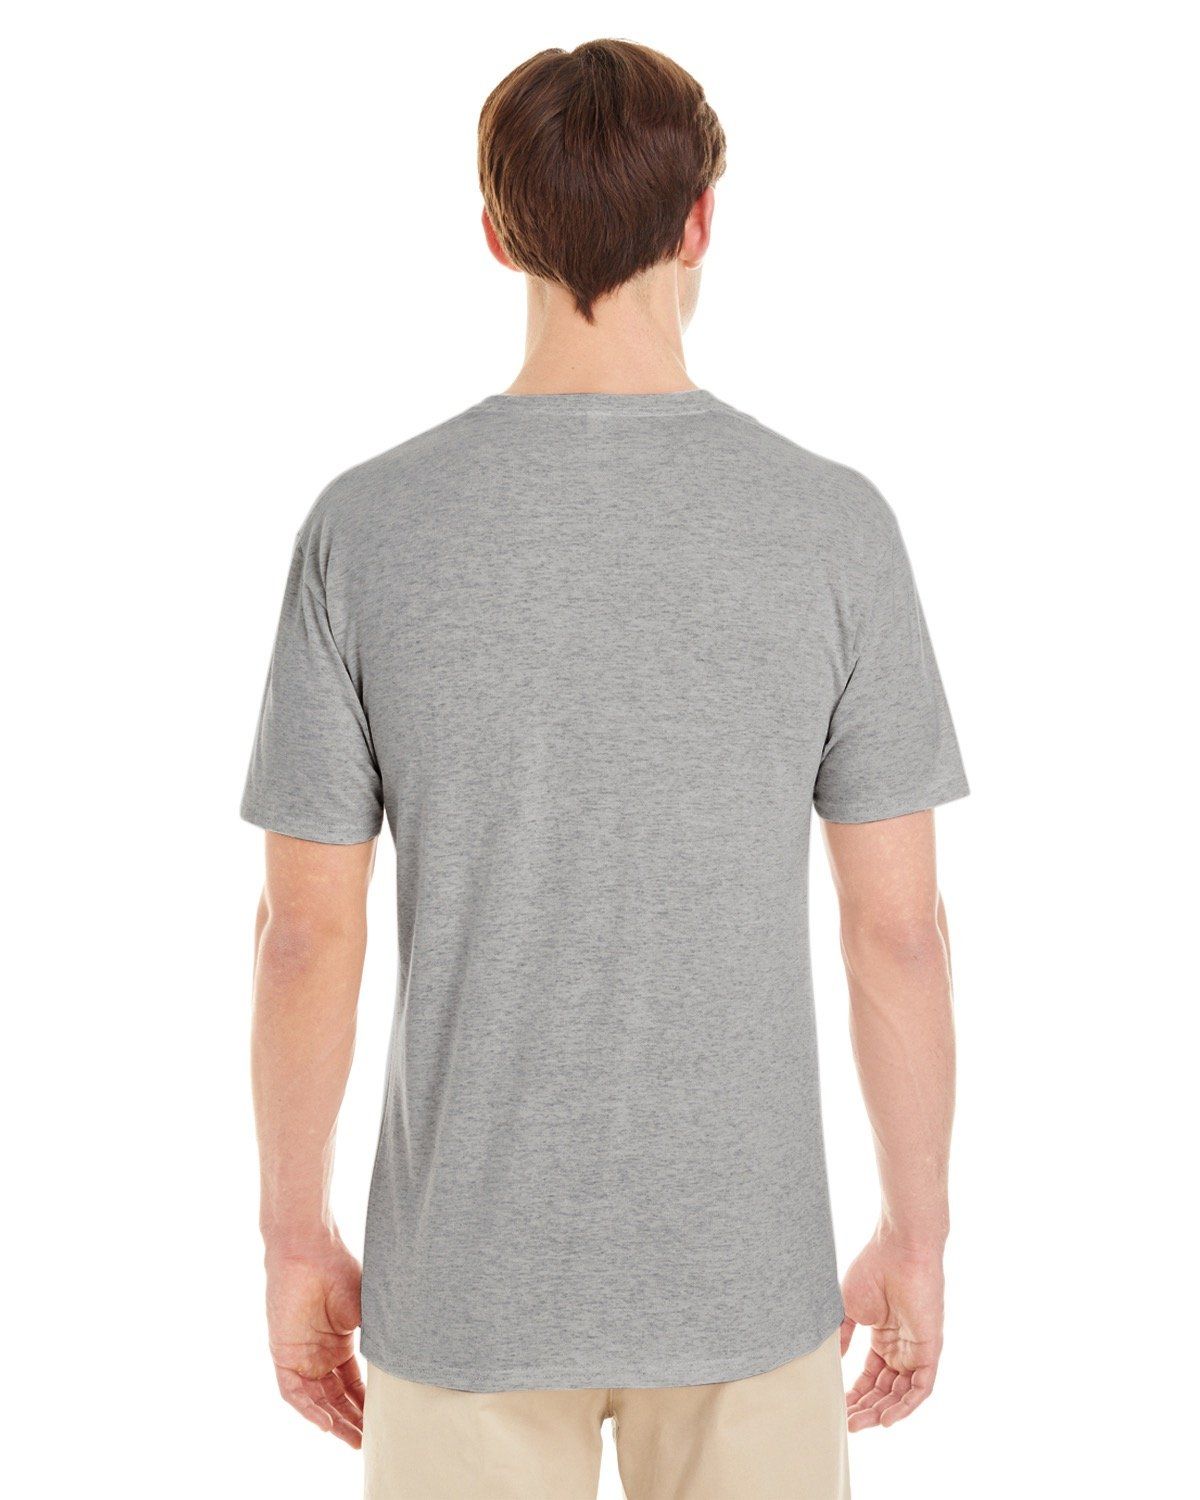 'Jerzees 601MR Adult TRI-BLEND T-Shirt'